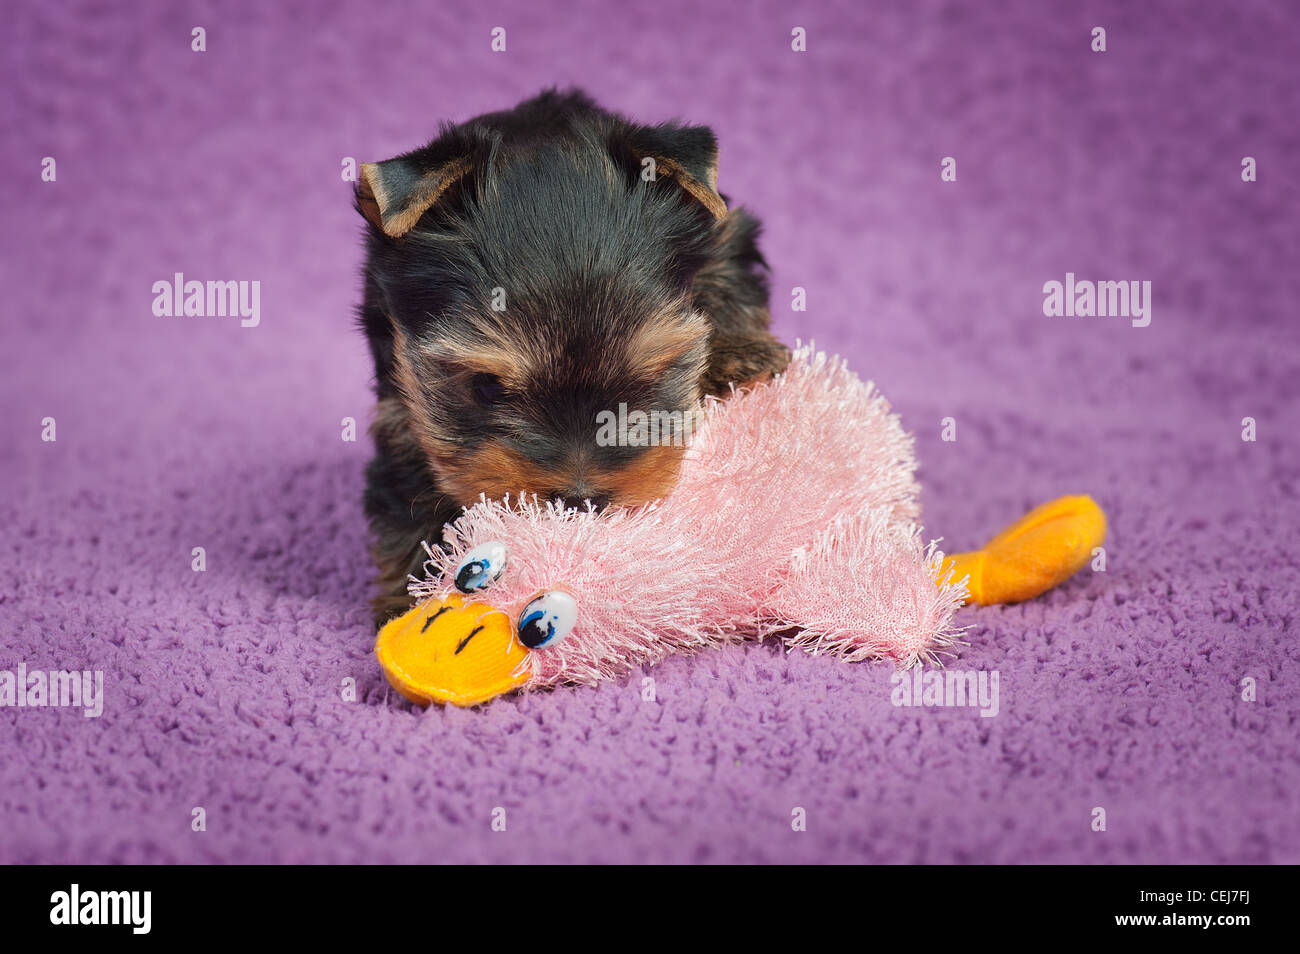 Chiot yorkshire terrier avec un jouet, sur fond violet Banque D'Images